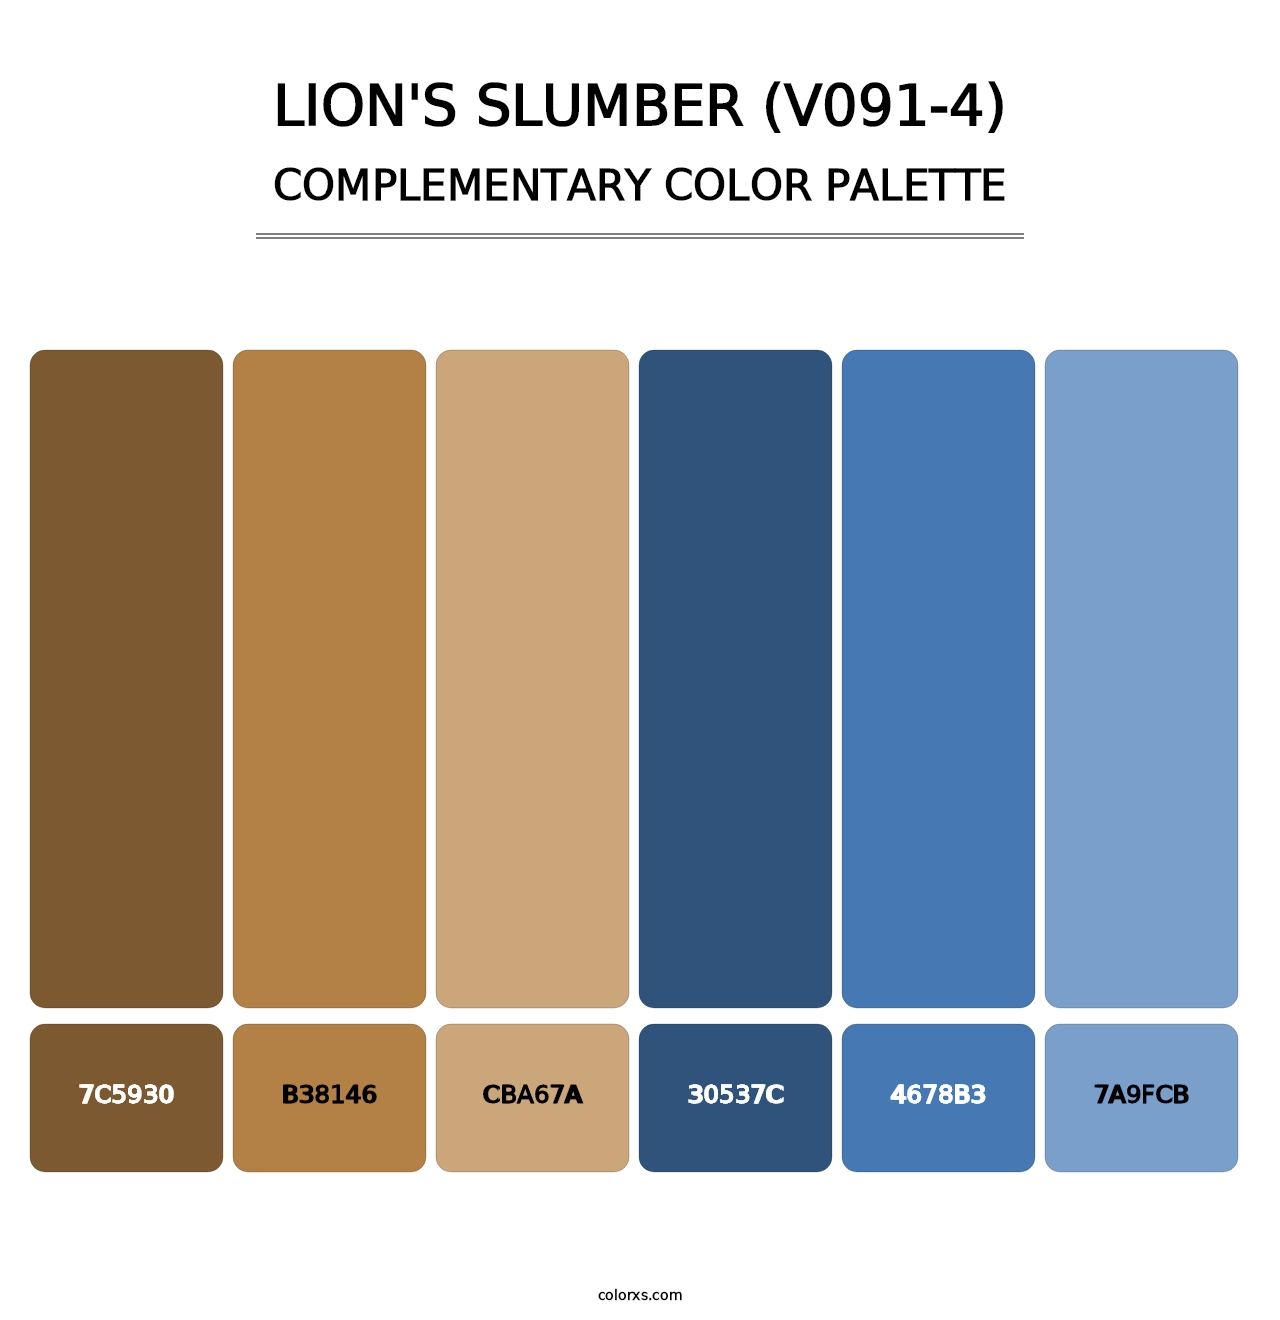 Lion's Slumber (V091-4) - Complementary Color Palette